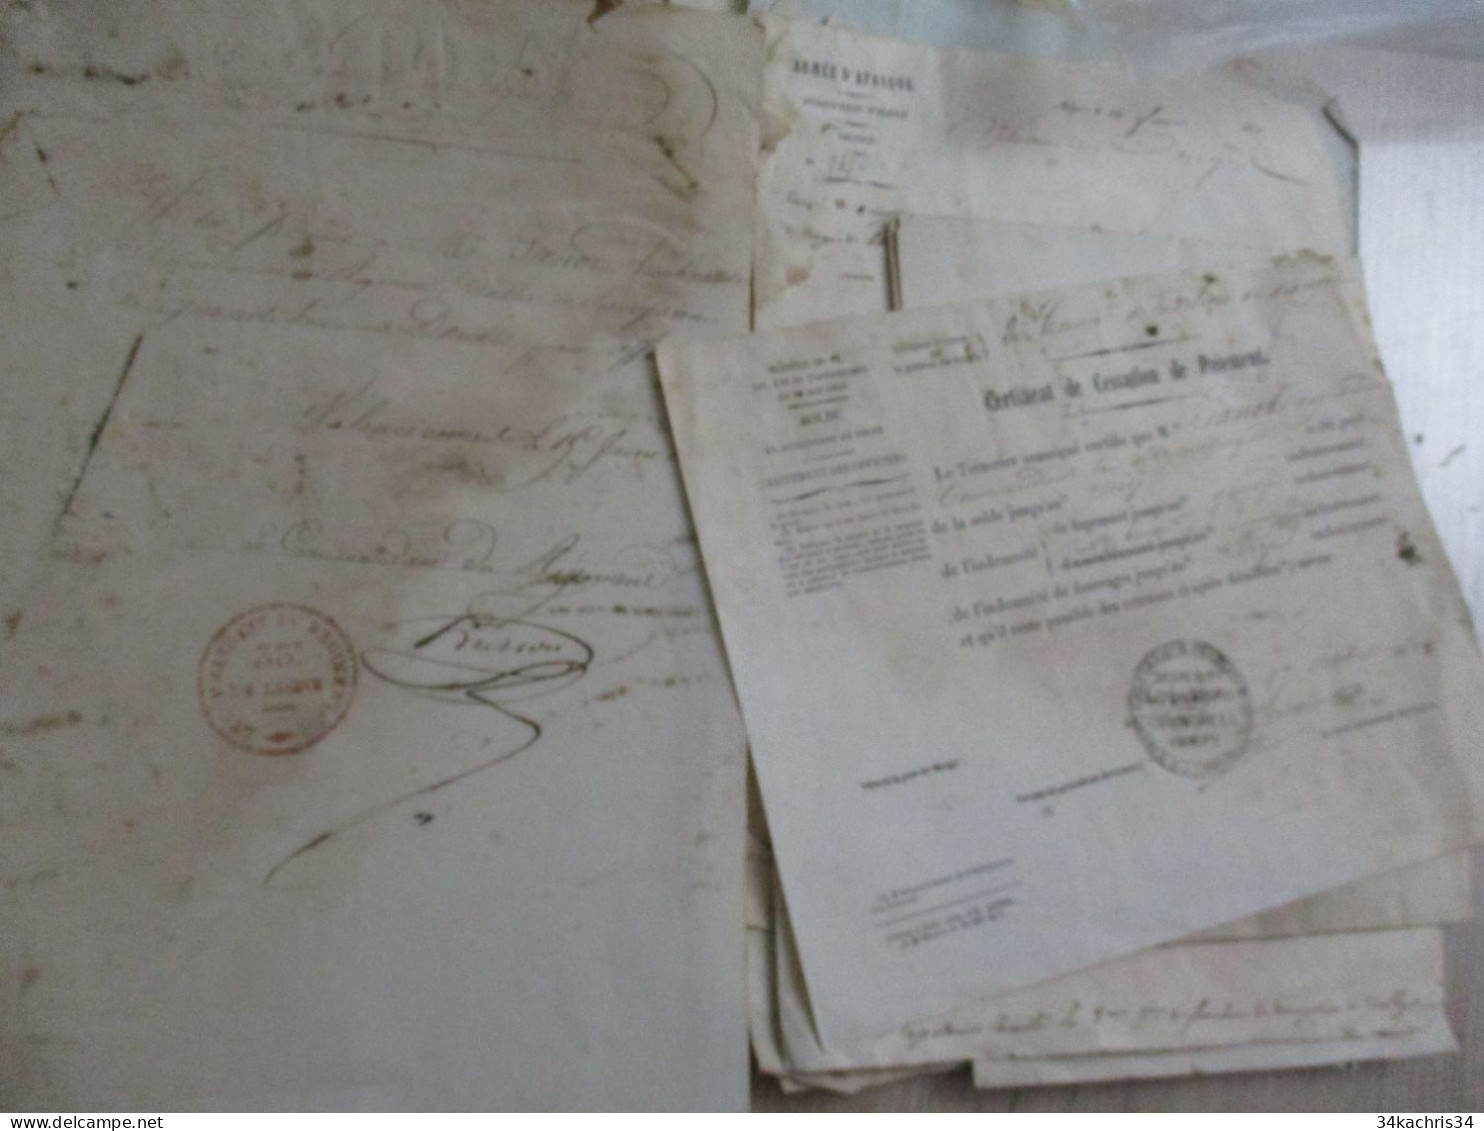 Armée d'Afrique campagne d'Afrique  Algérie + de 35 documents originaux dont beaucoup abiïmes